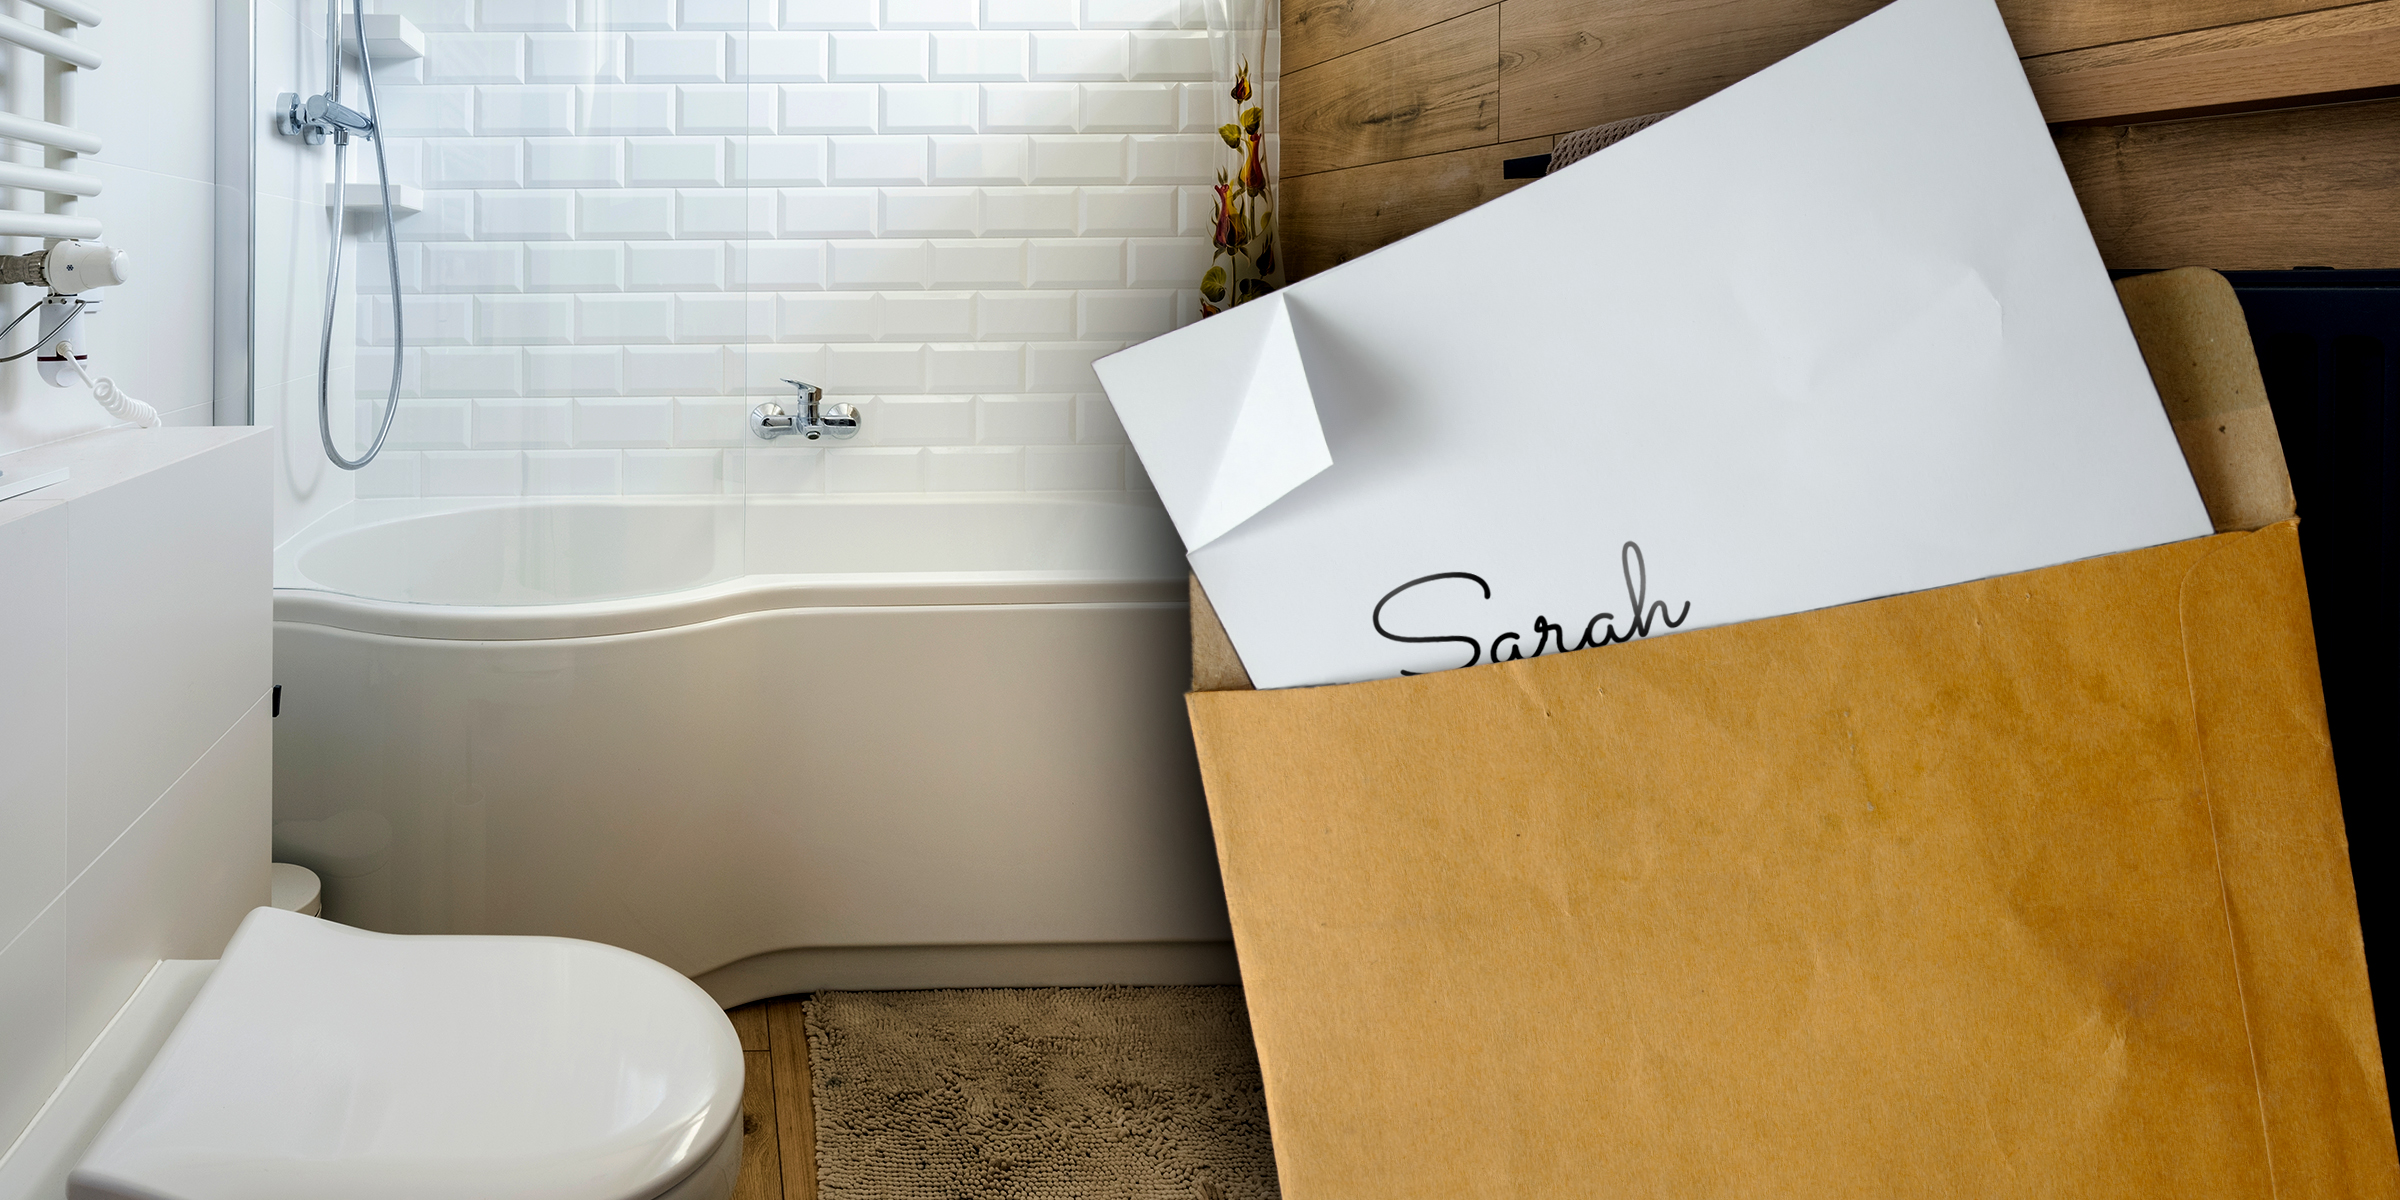 Une lettre trouvée dans une salle de bain | Source : Shutterstock